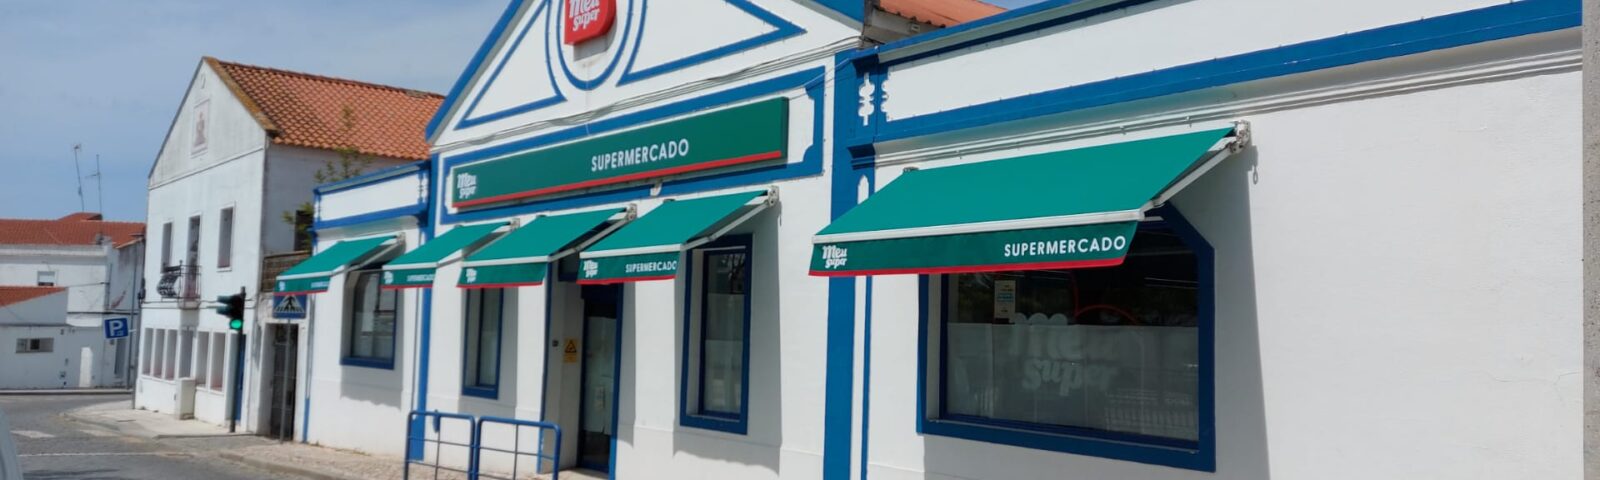 O Meu Super, rede de retalho de lojas de proximidade, abriu duas novas lojas em Campo Maior (Portalegre) e em Abrantes (Santarém).